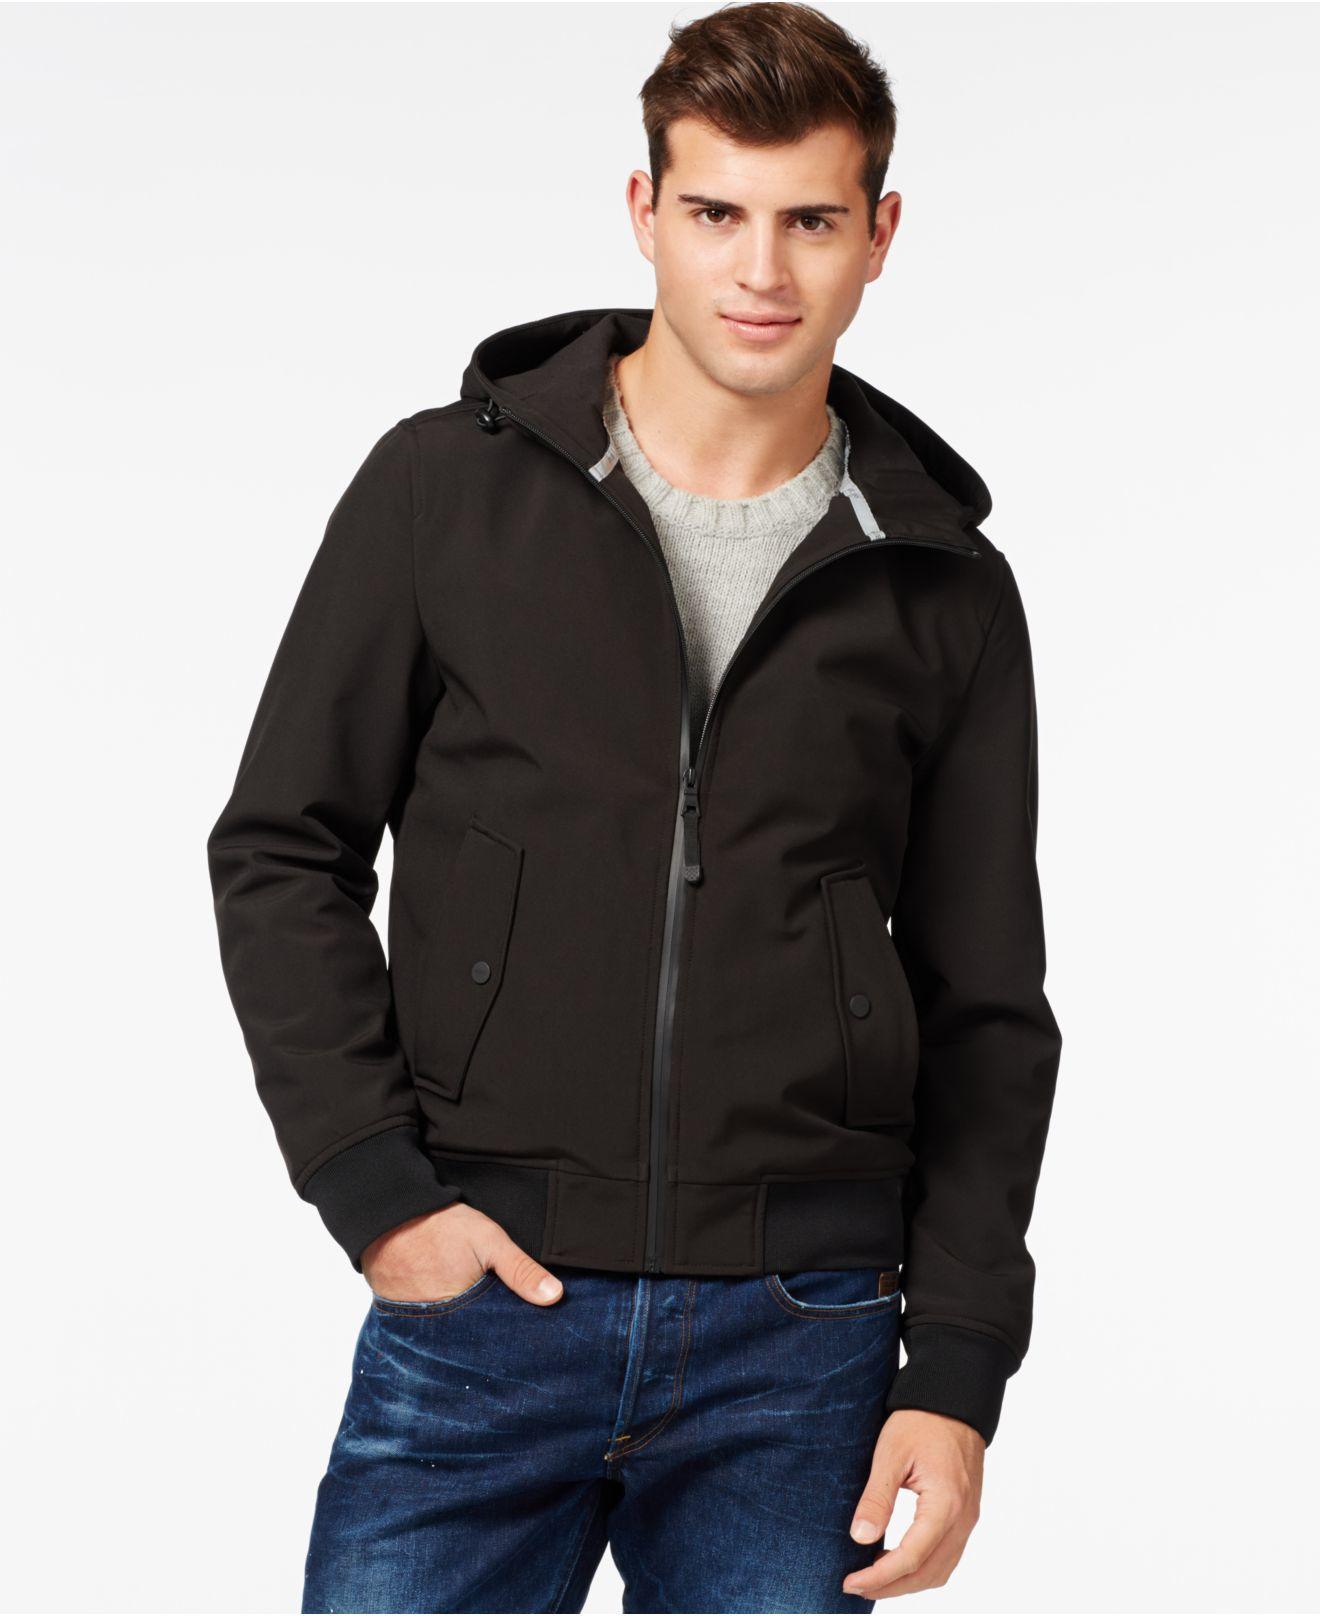 Guess Hooded Softshell Windbreaker Jacket in Black for Men - Lyst